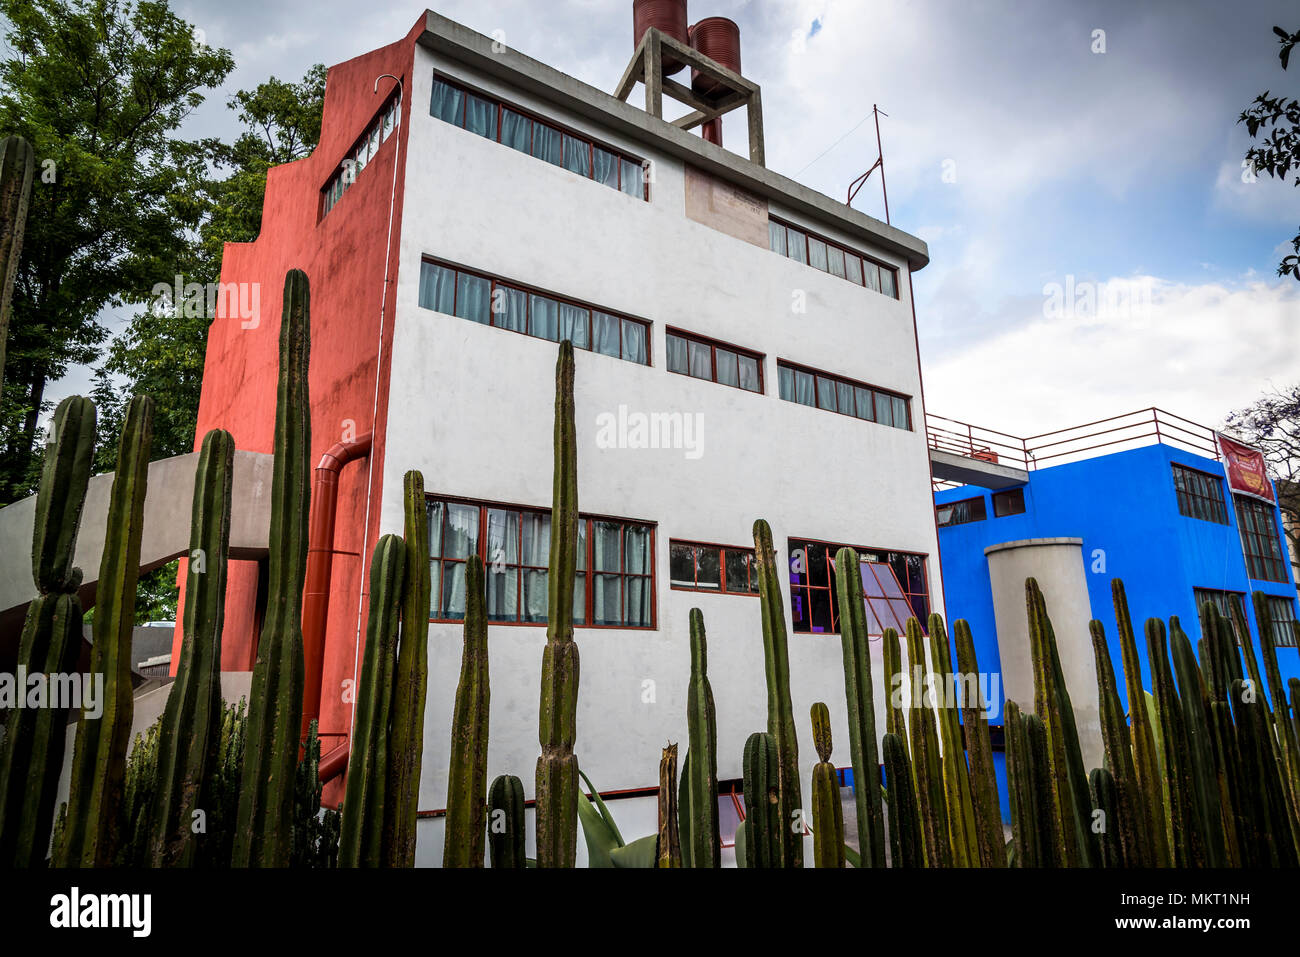 House - Studio Museum von Diego Rivera und Frida Kahlo, San Angel, Mexiko City, Mexiko Stockfoto